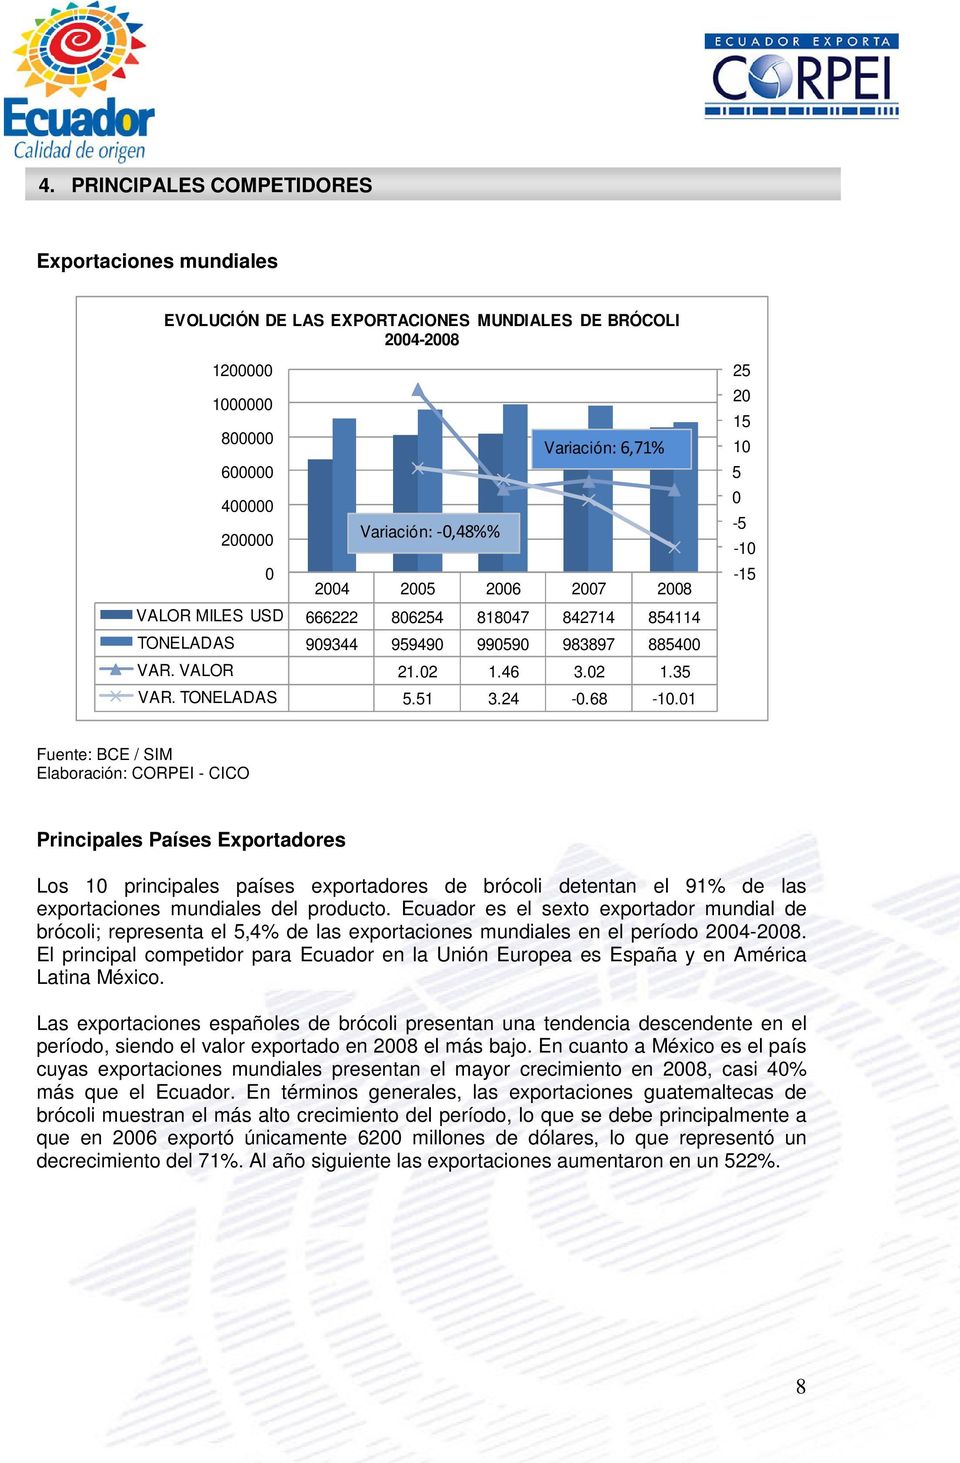 01 25 20 15 10 5 0-5 -10-15 Fuente: BCE / SIM Elaboración: CORPEI - CICO Principales Países Exportadores Los 10 principales países exportadores de brócoli detentan el 91% de las exportaciones